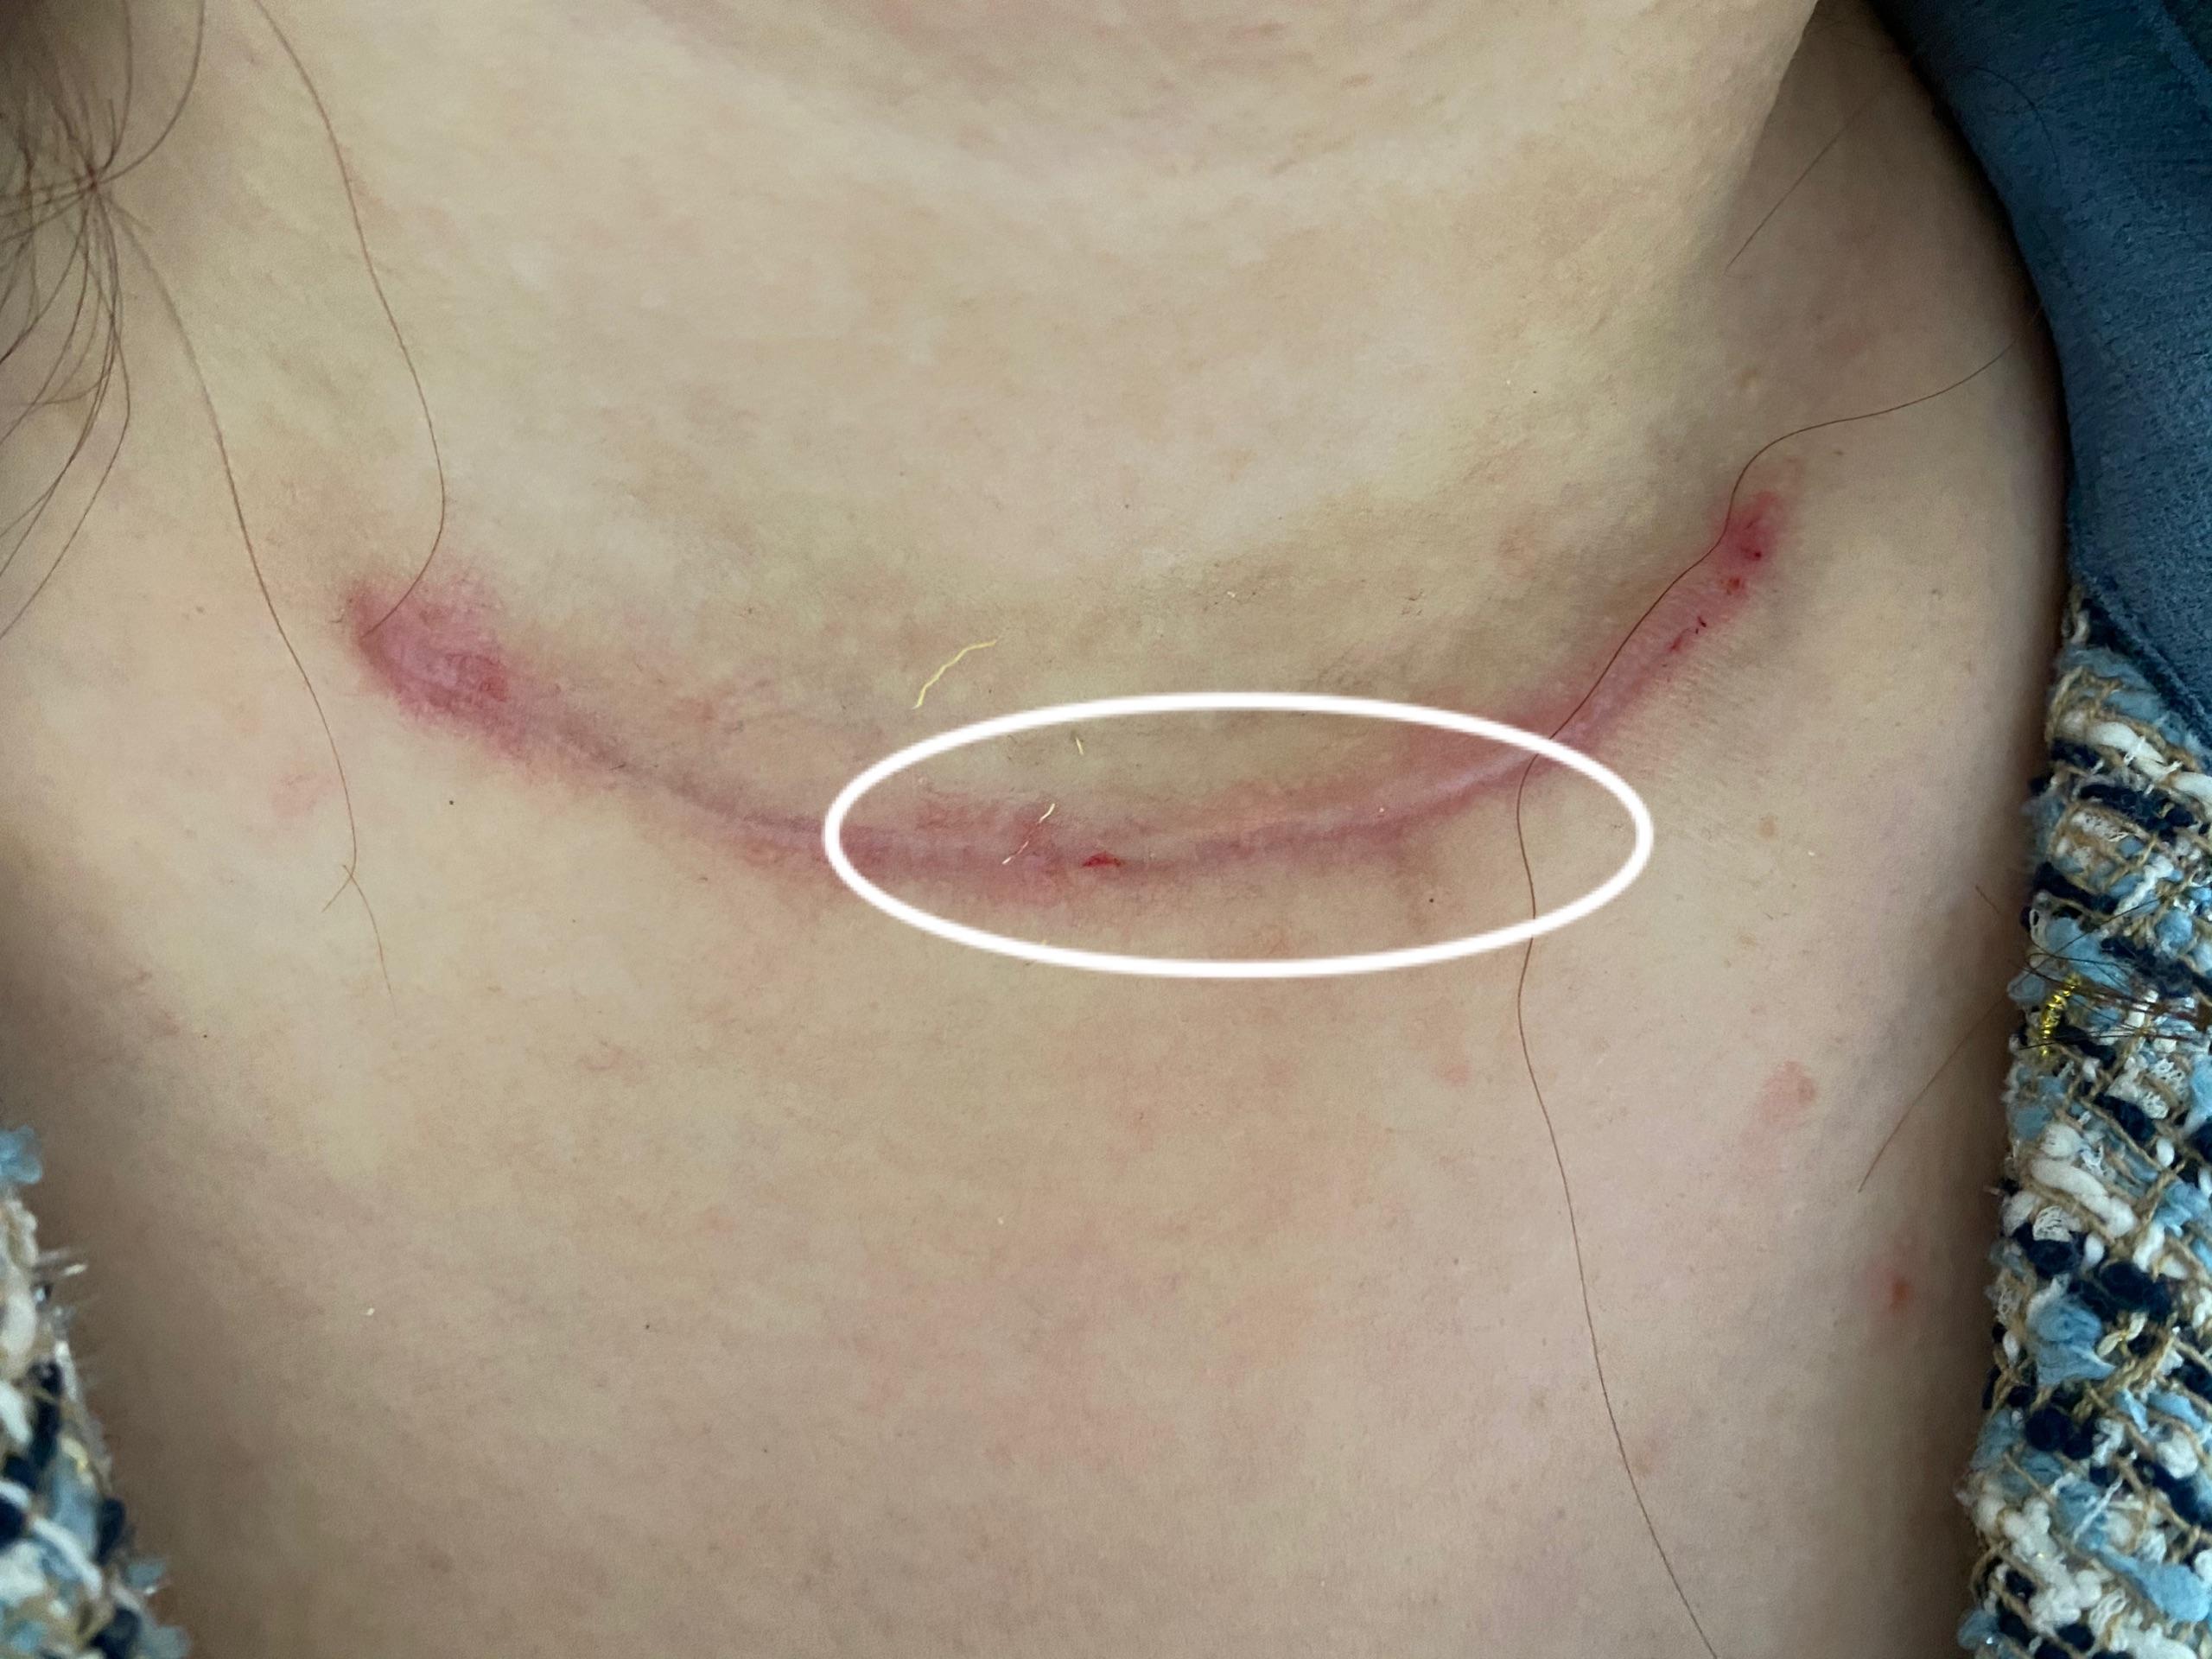 甲状腺结节手术后疤痕图片